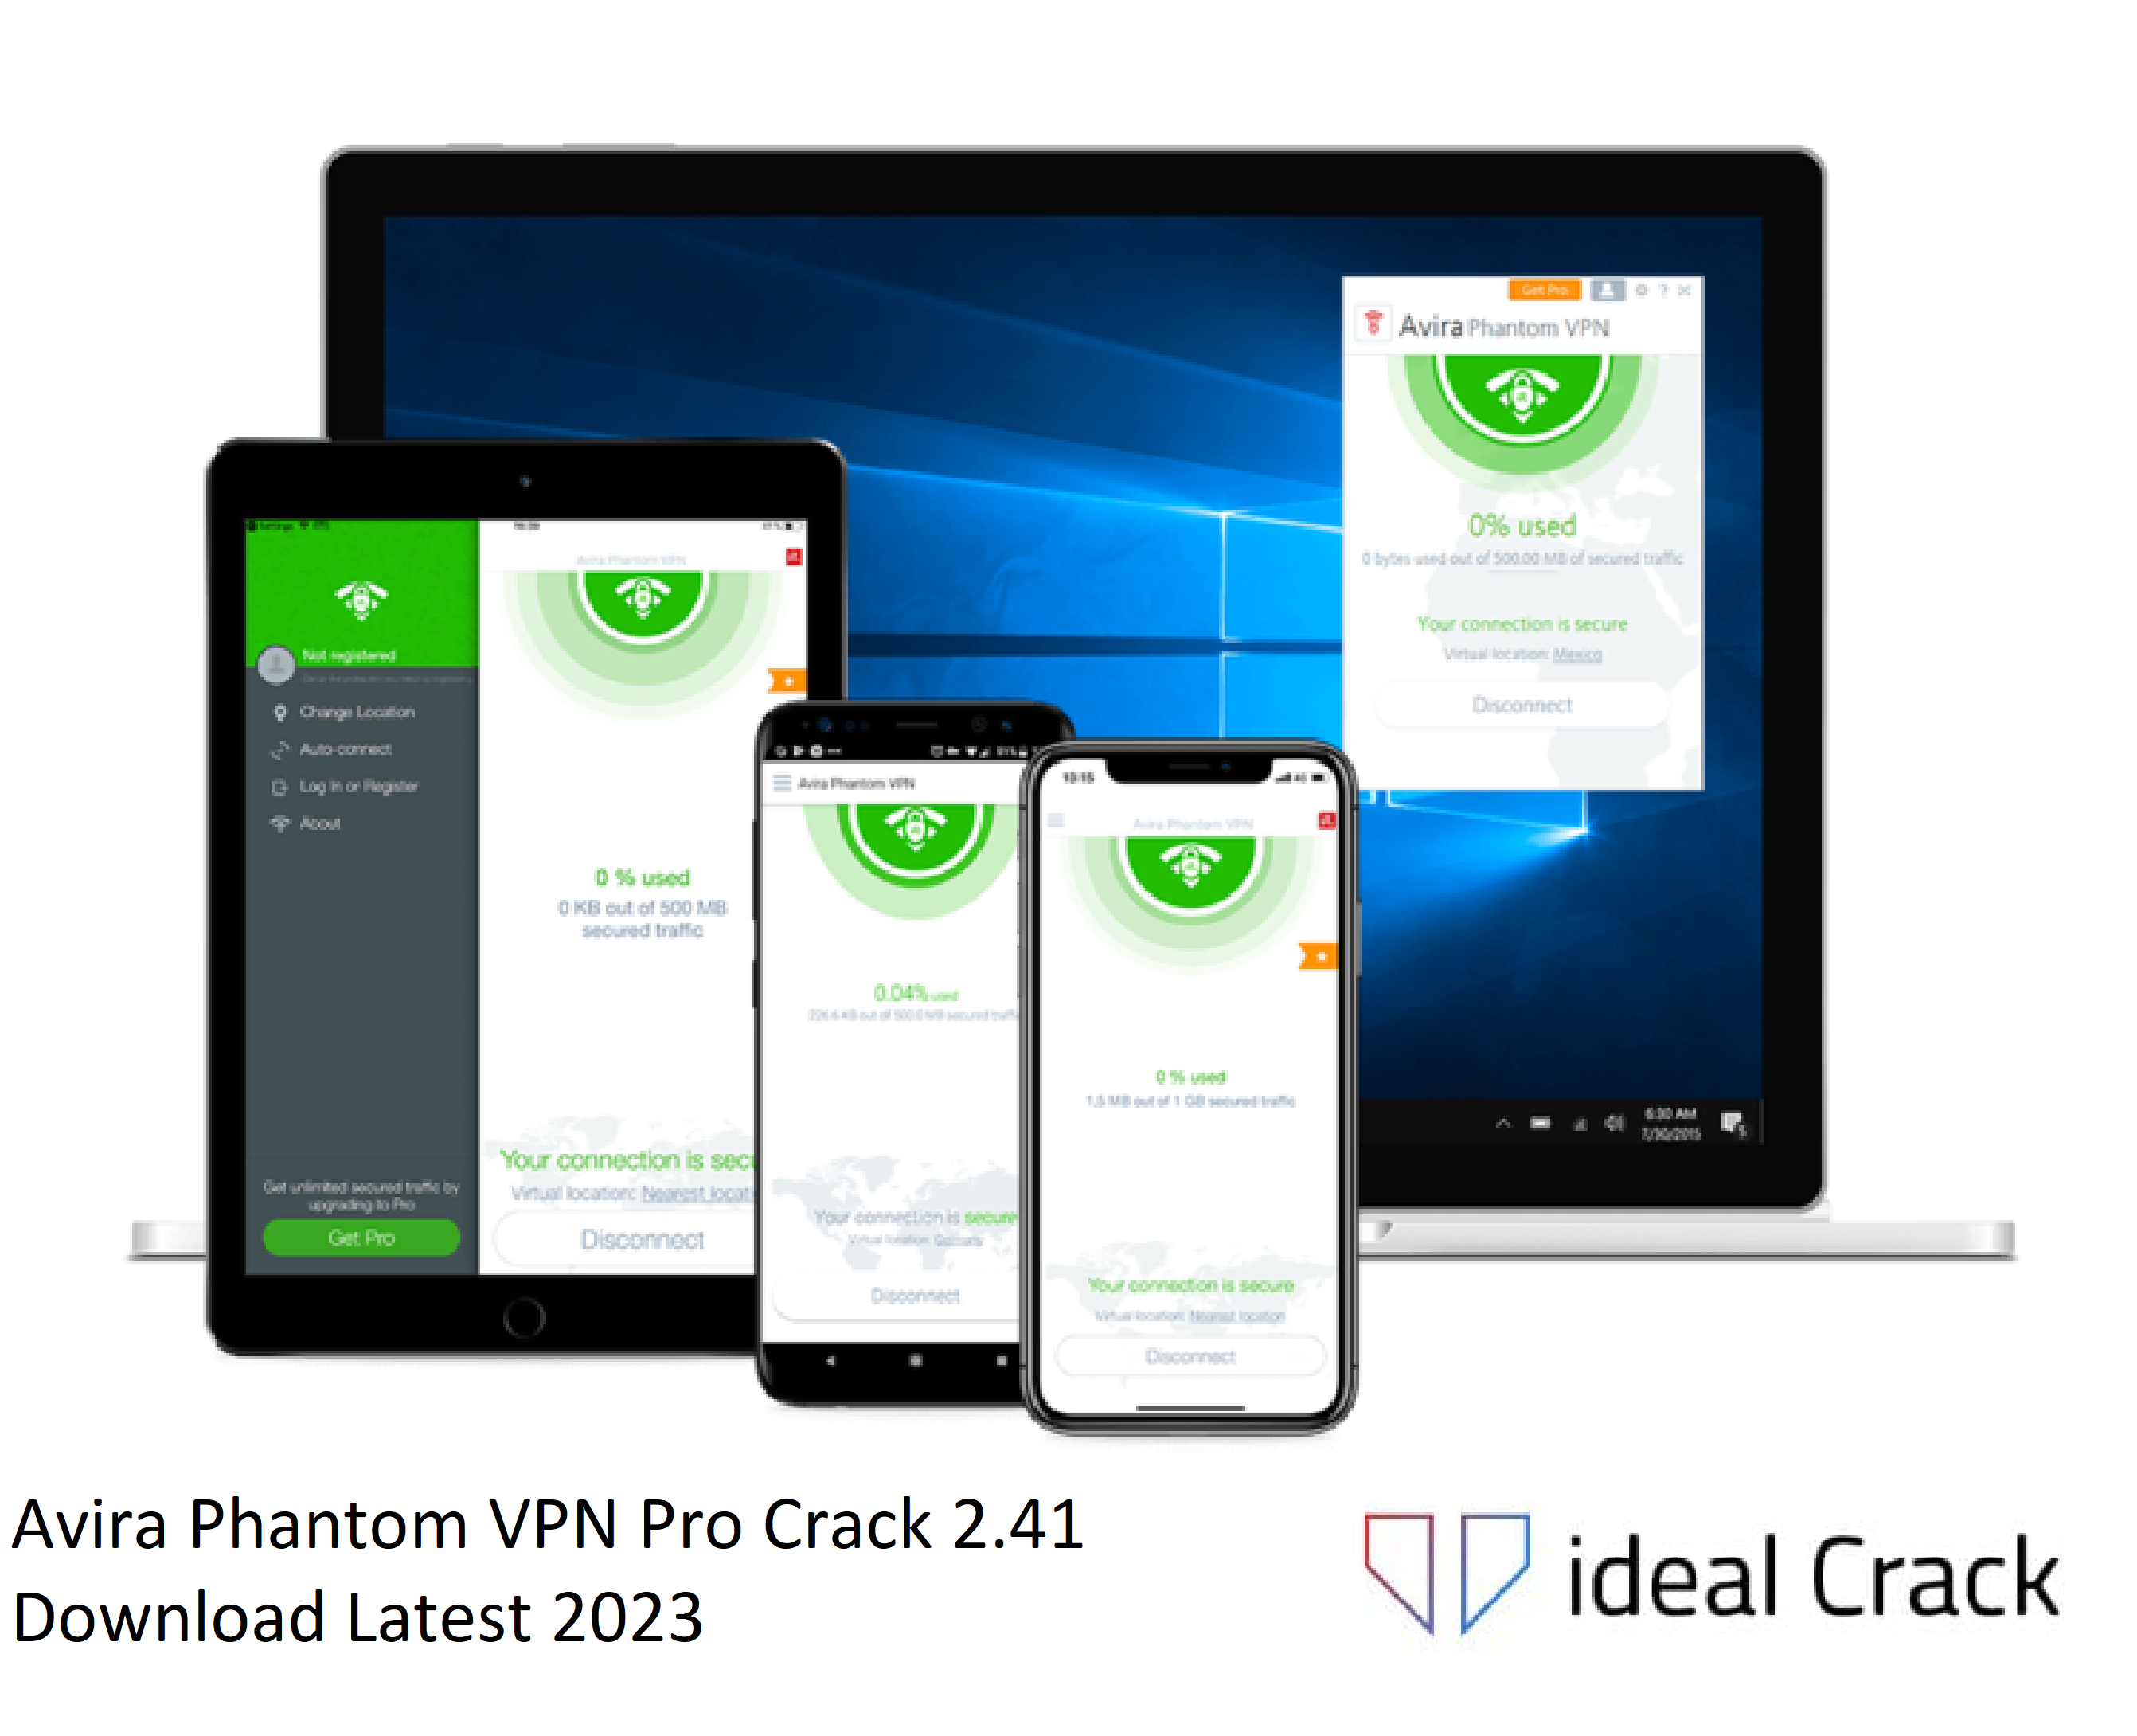 Avira Phantom VPN Pro Crack 2.41 Download Latest 2023